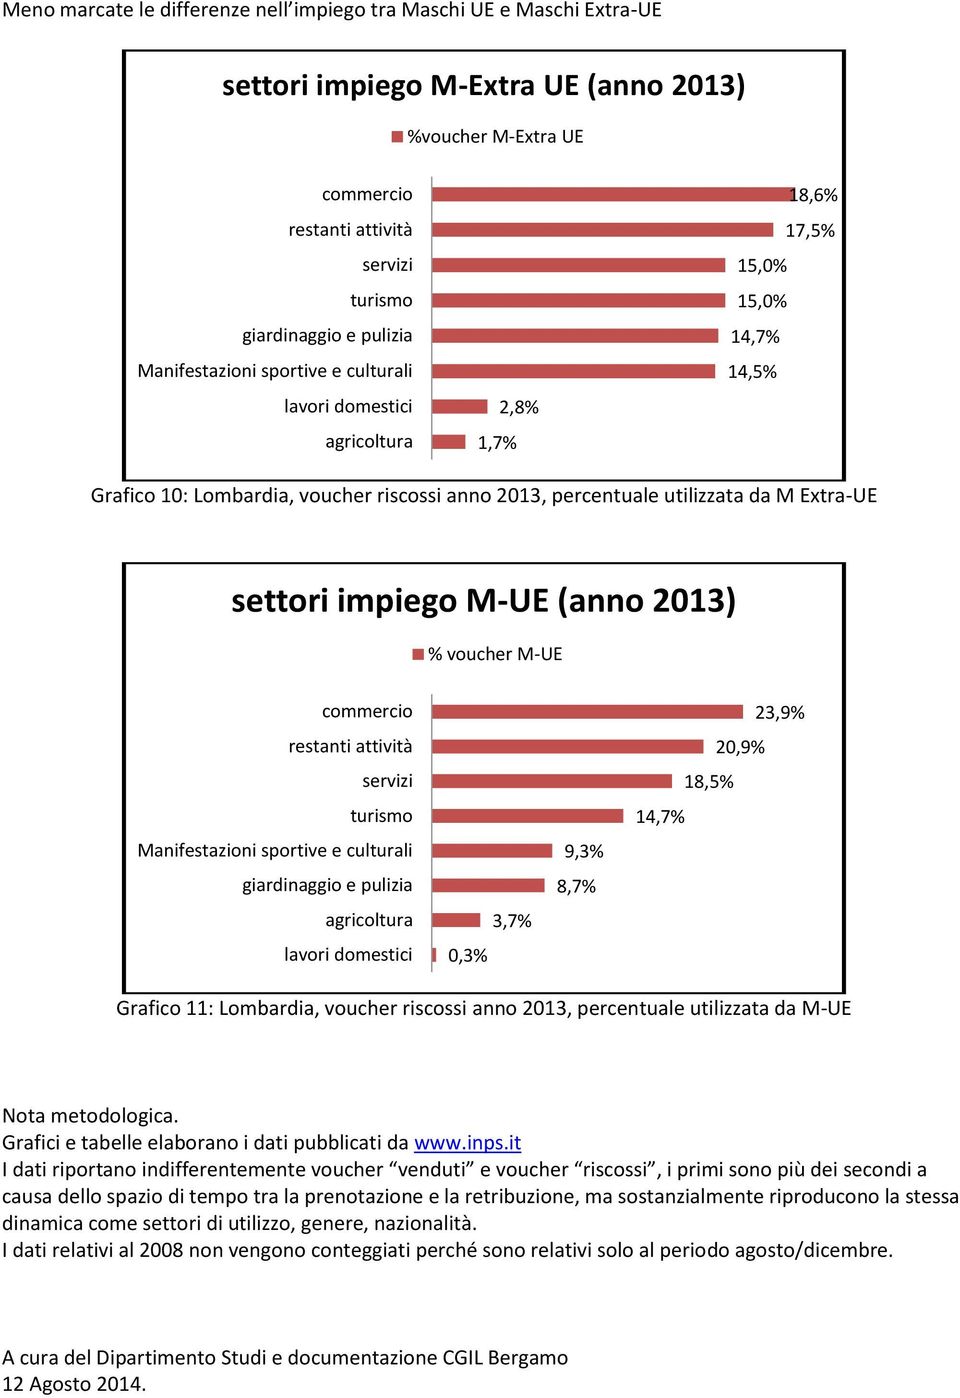 anno 2013, percentuale utilizzata da M-UE Nota metodologica. Grafici e tabelle elaborano i dati pubblicati da www.inps.